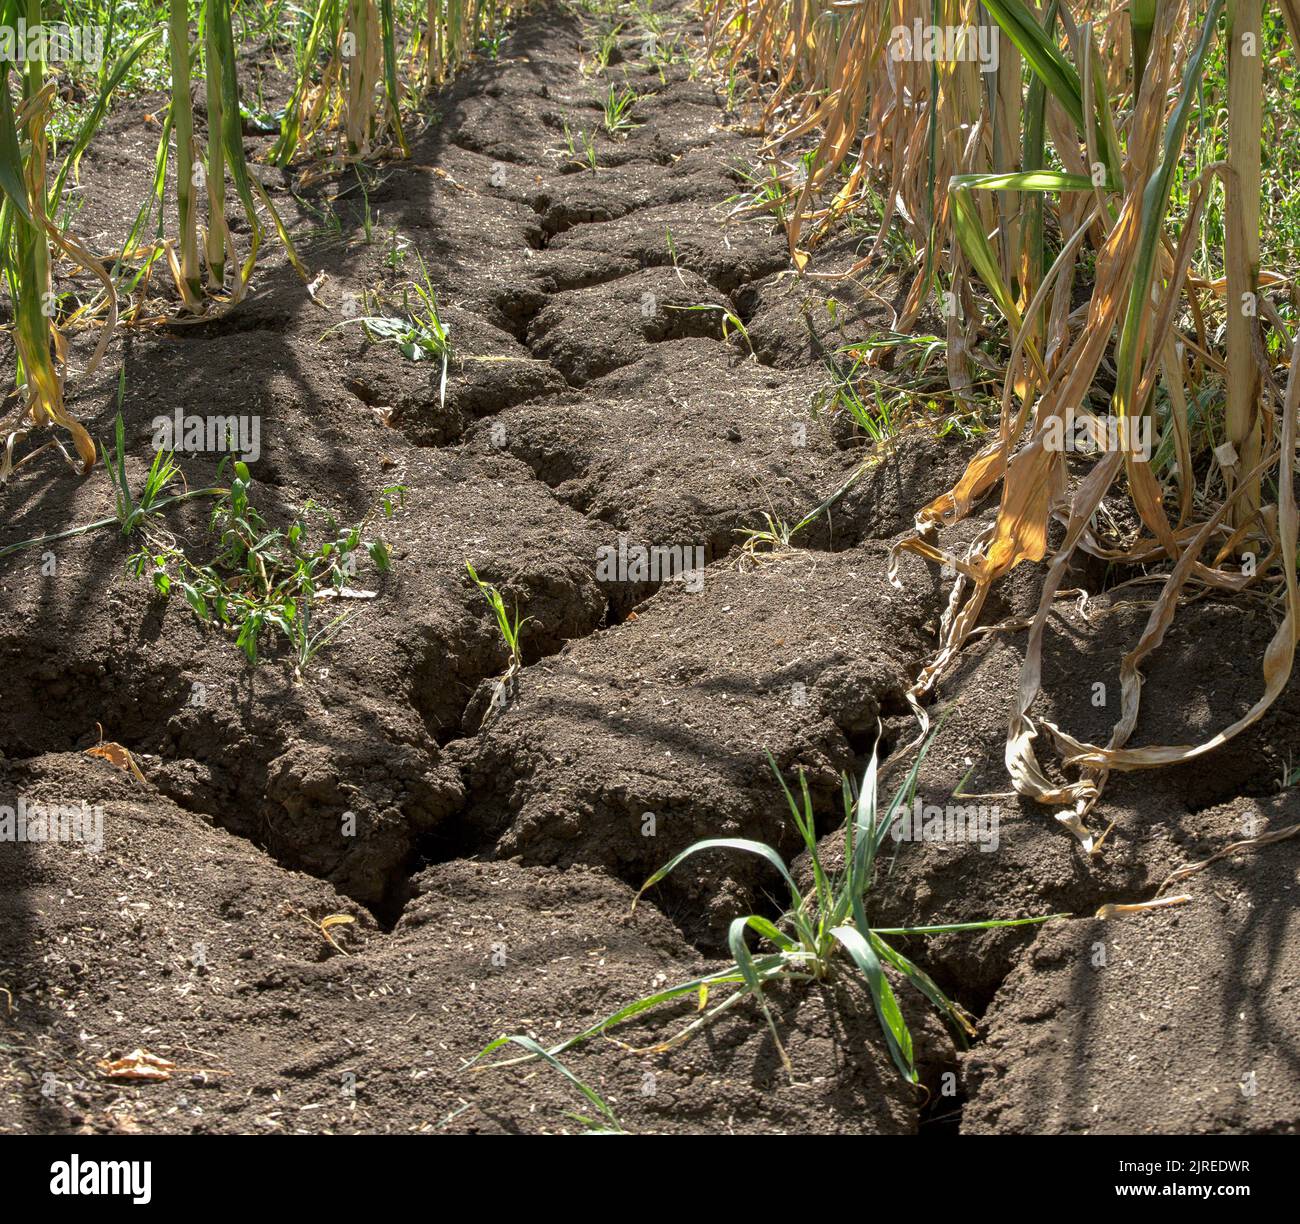 Innenansicht eines Maisfeldes in Deutschland. Aufgrund der anhaltenden Dürre ist das Ackerland ausgetrocknet und es haben sich tiefe Risse gebildet. Stockfoto